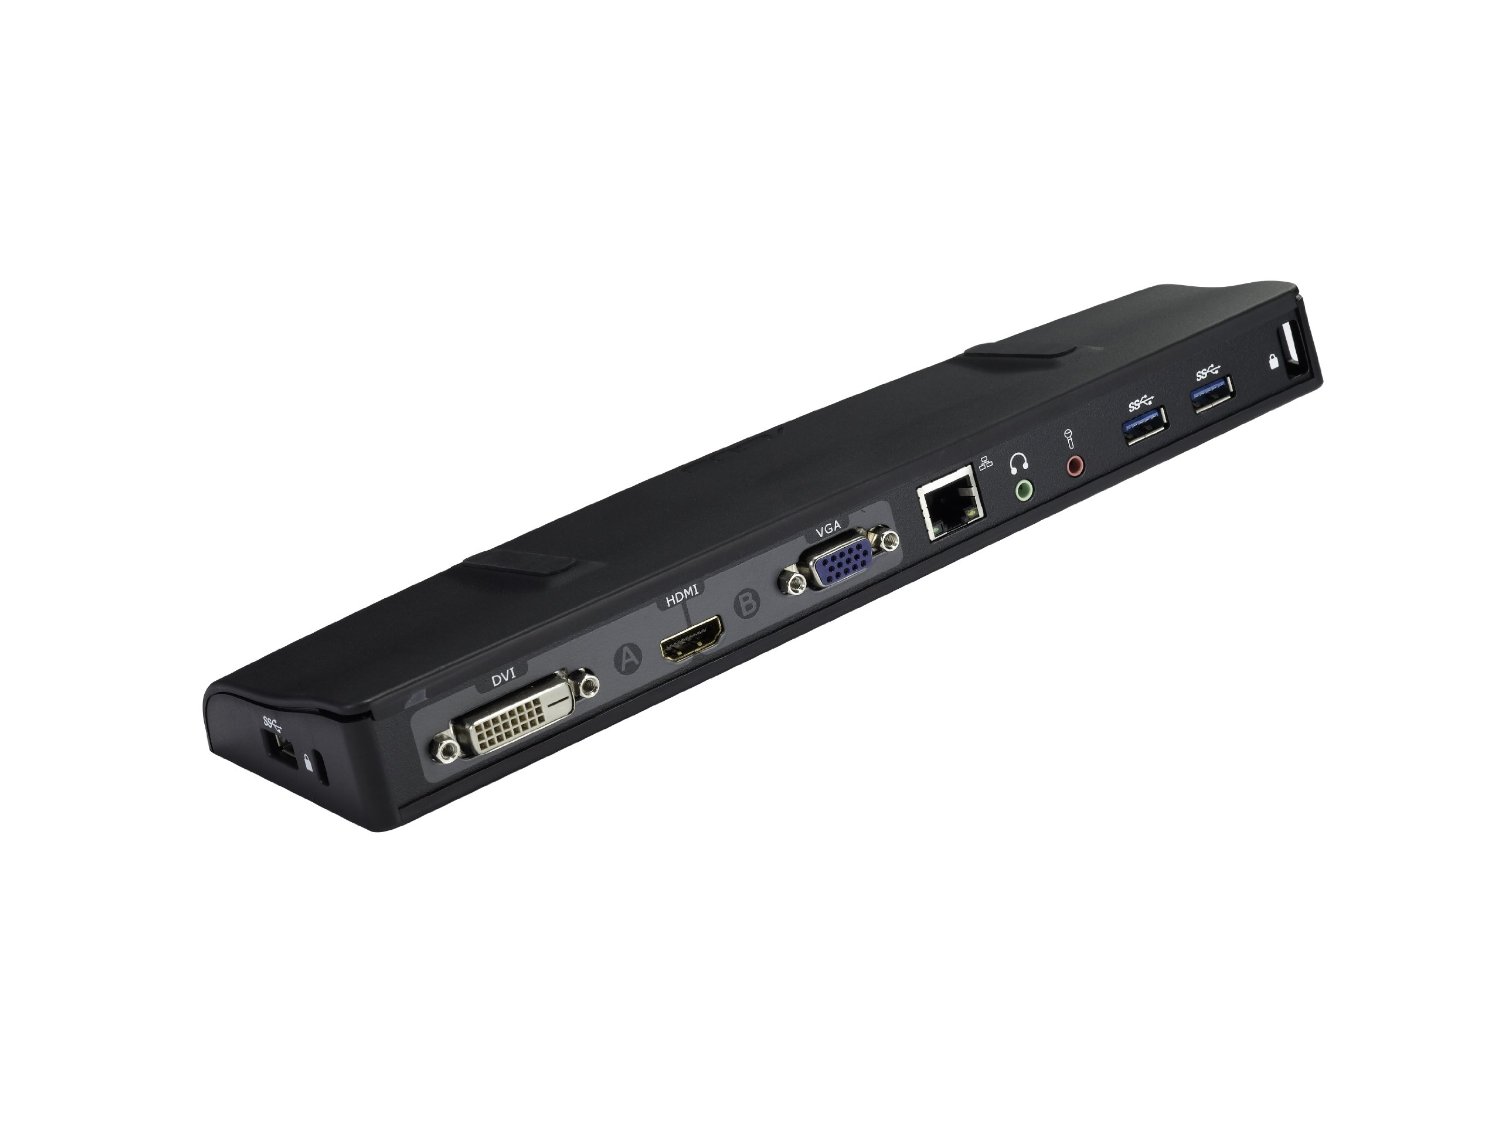 ASUS USB 3.0 Universal Laptop Docking Station